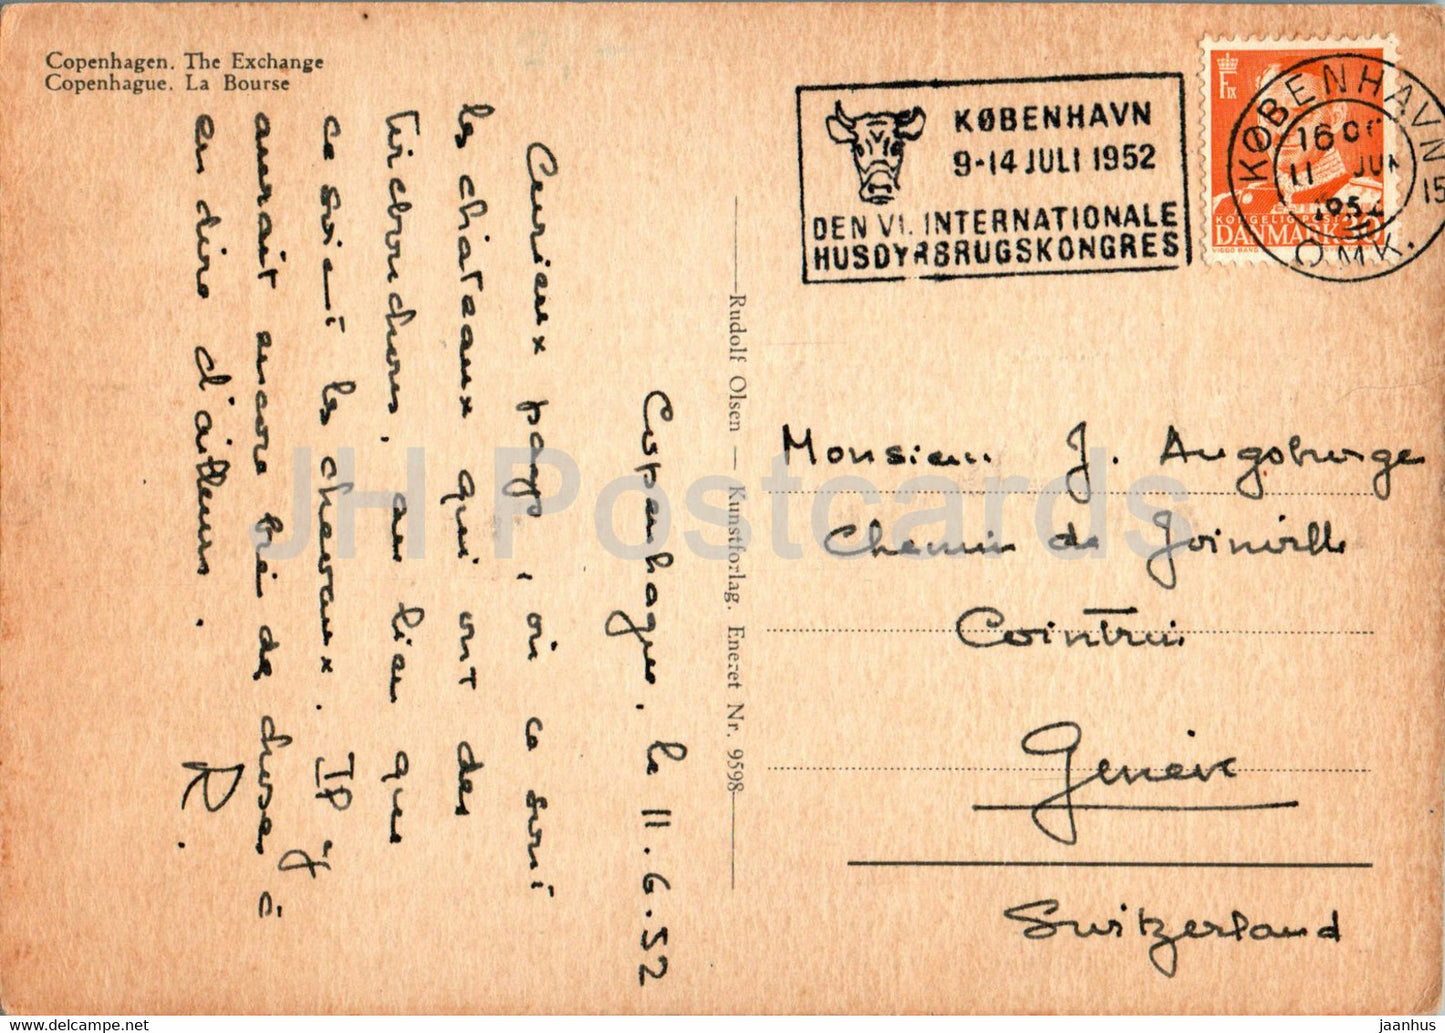 Copenhagen - Kopenhagen - The Exchange - old postcard - 9598 - 1952 - Denmark - used